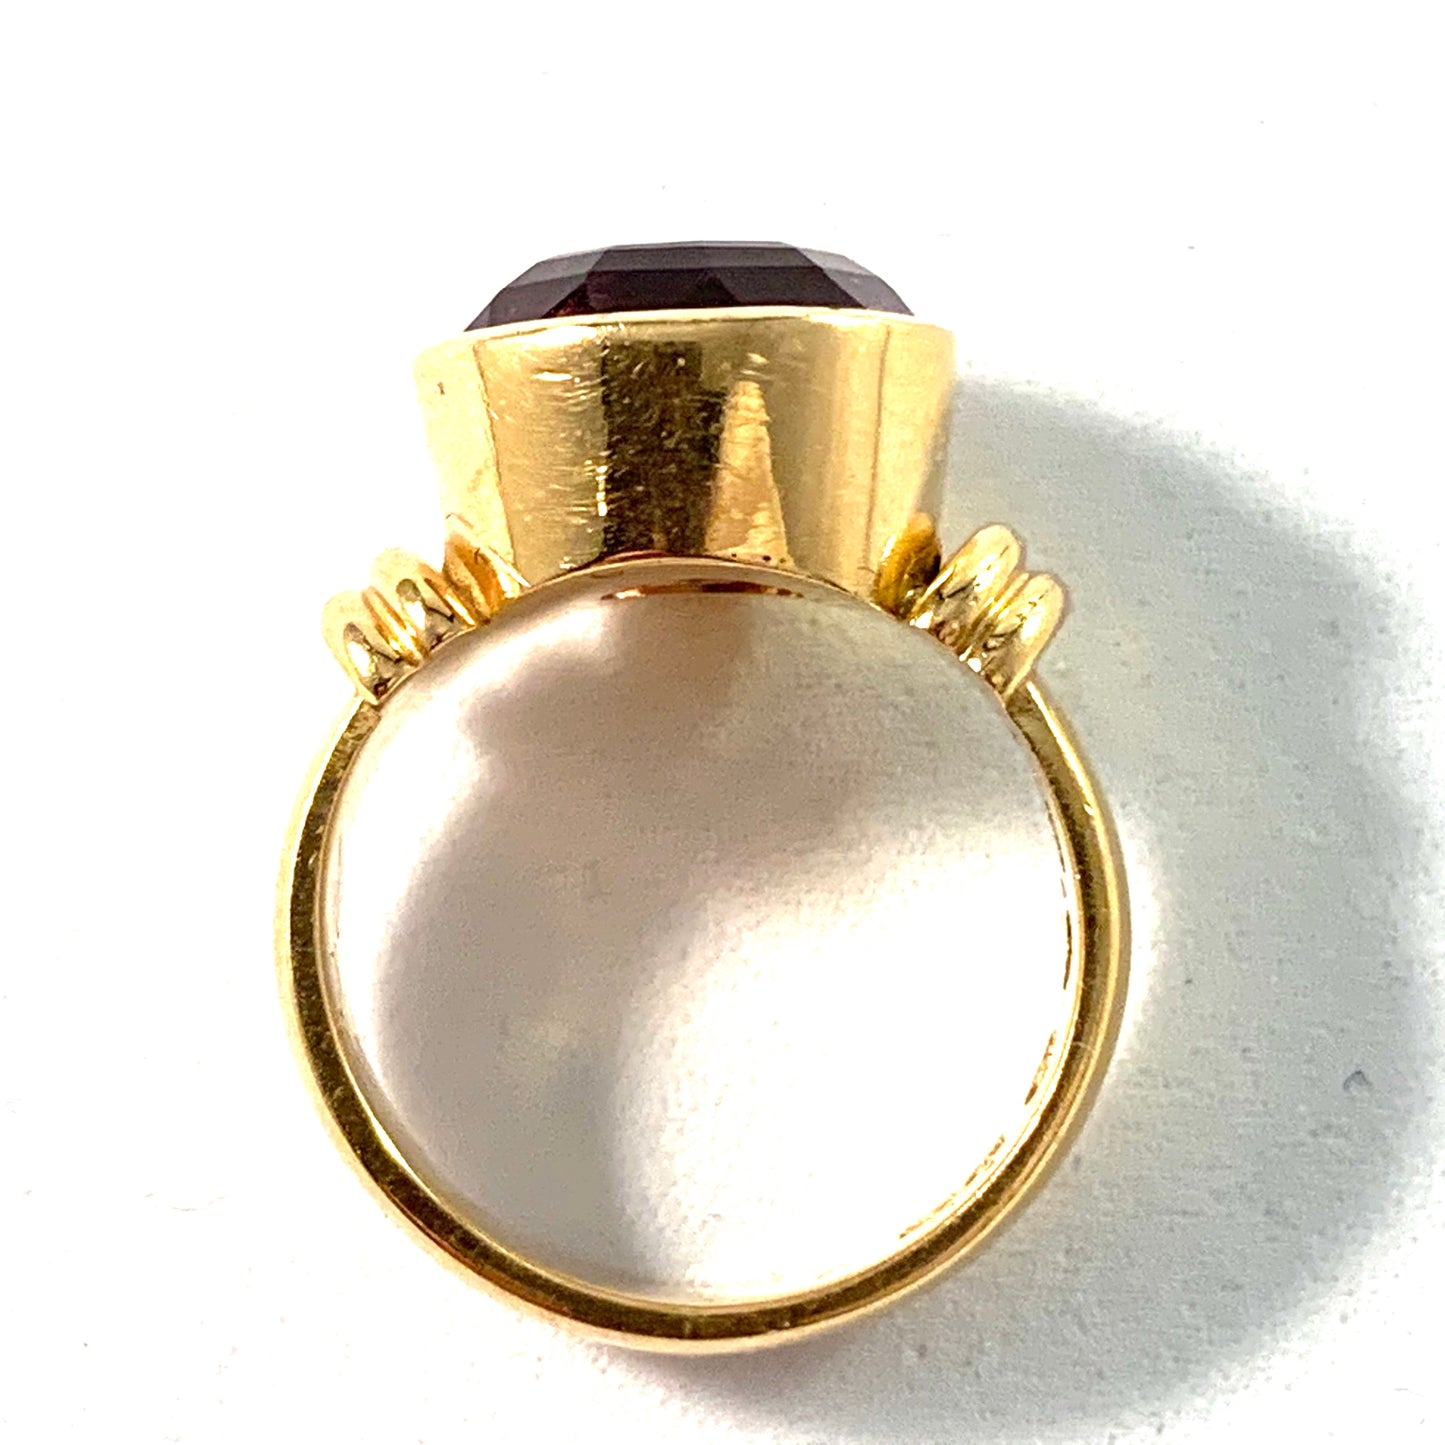 Kjernås, Sweden 1930s, 20k Gold Amethyst Ring.